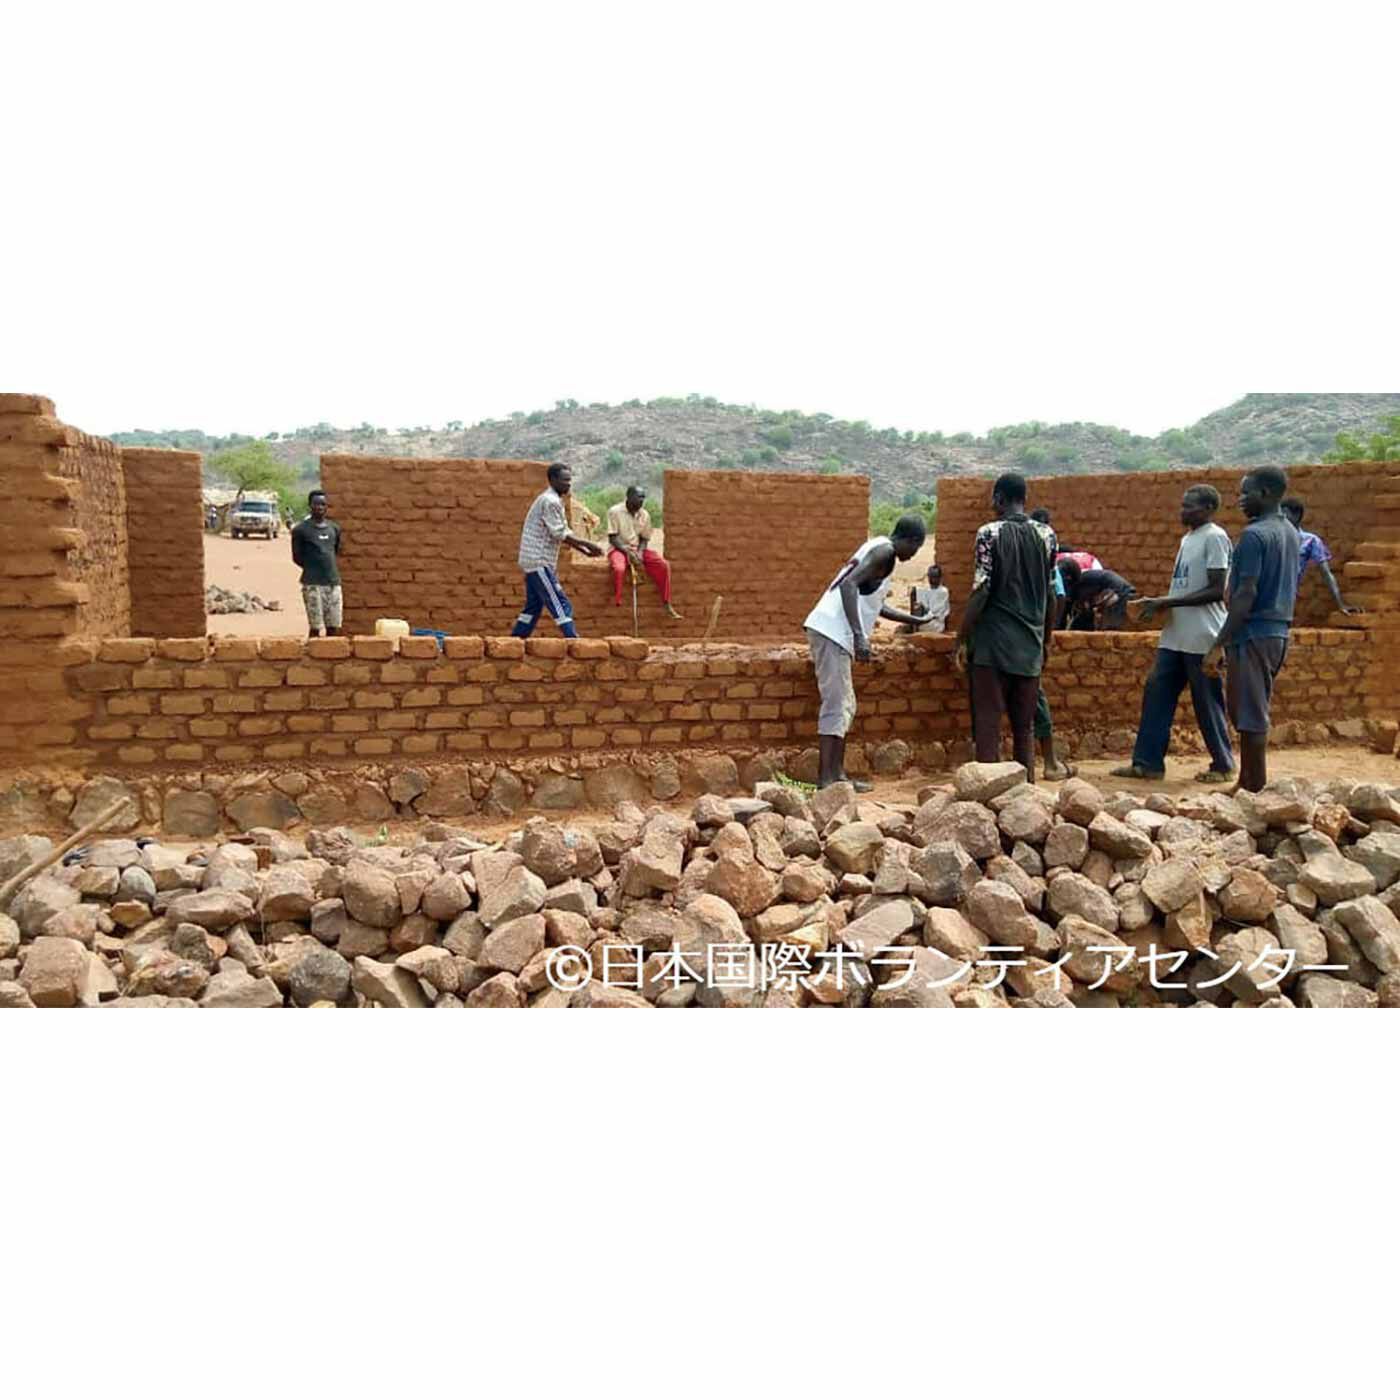 フェリシモメリー|フェリシモメリー 地球村の基金|レンガを積み上げて校舎の壁を修繕する人々